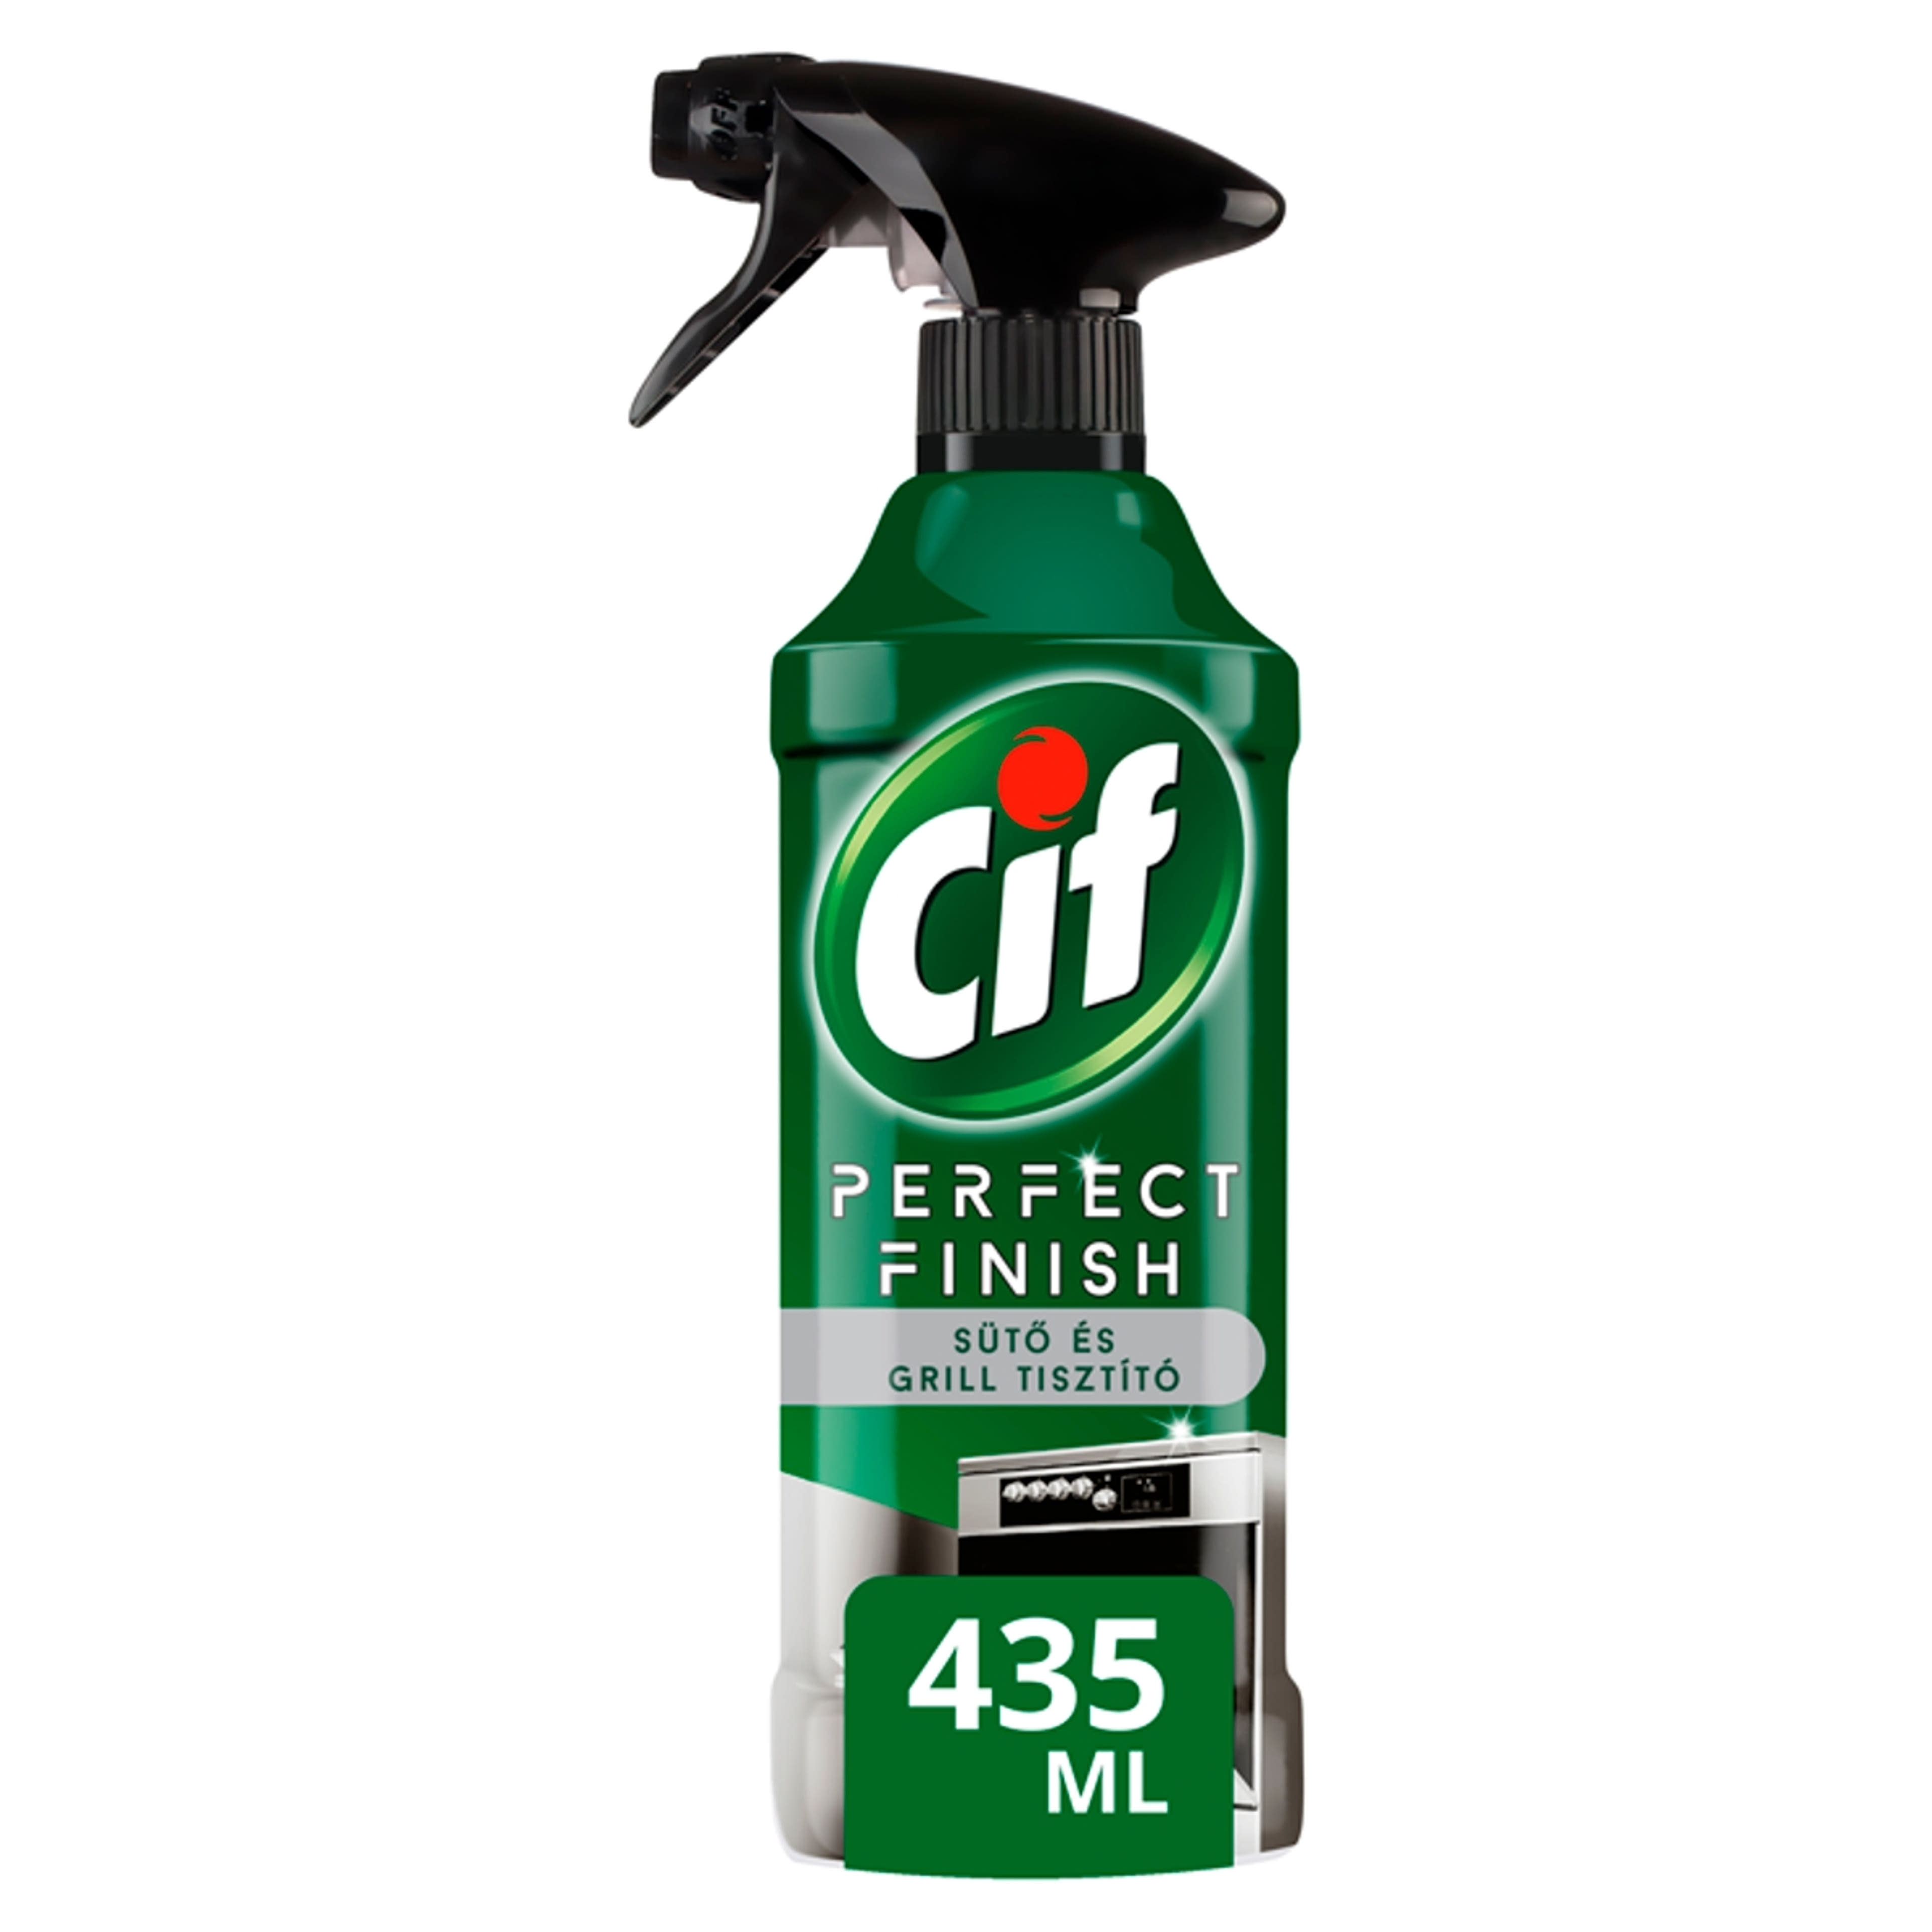 Cif Perfect Finish Sütő & Grill Spray - 435 ml-2